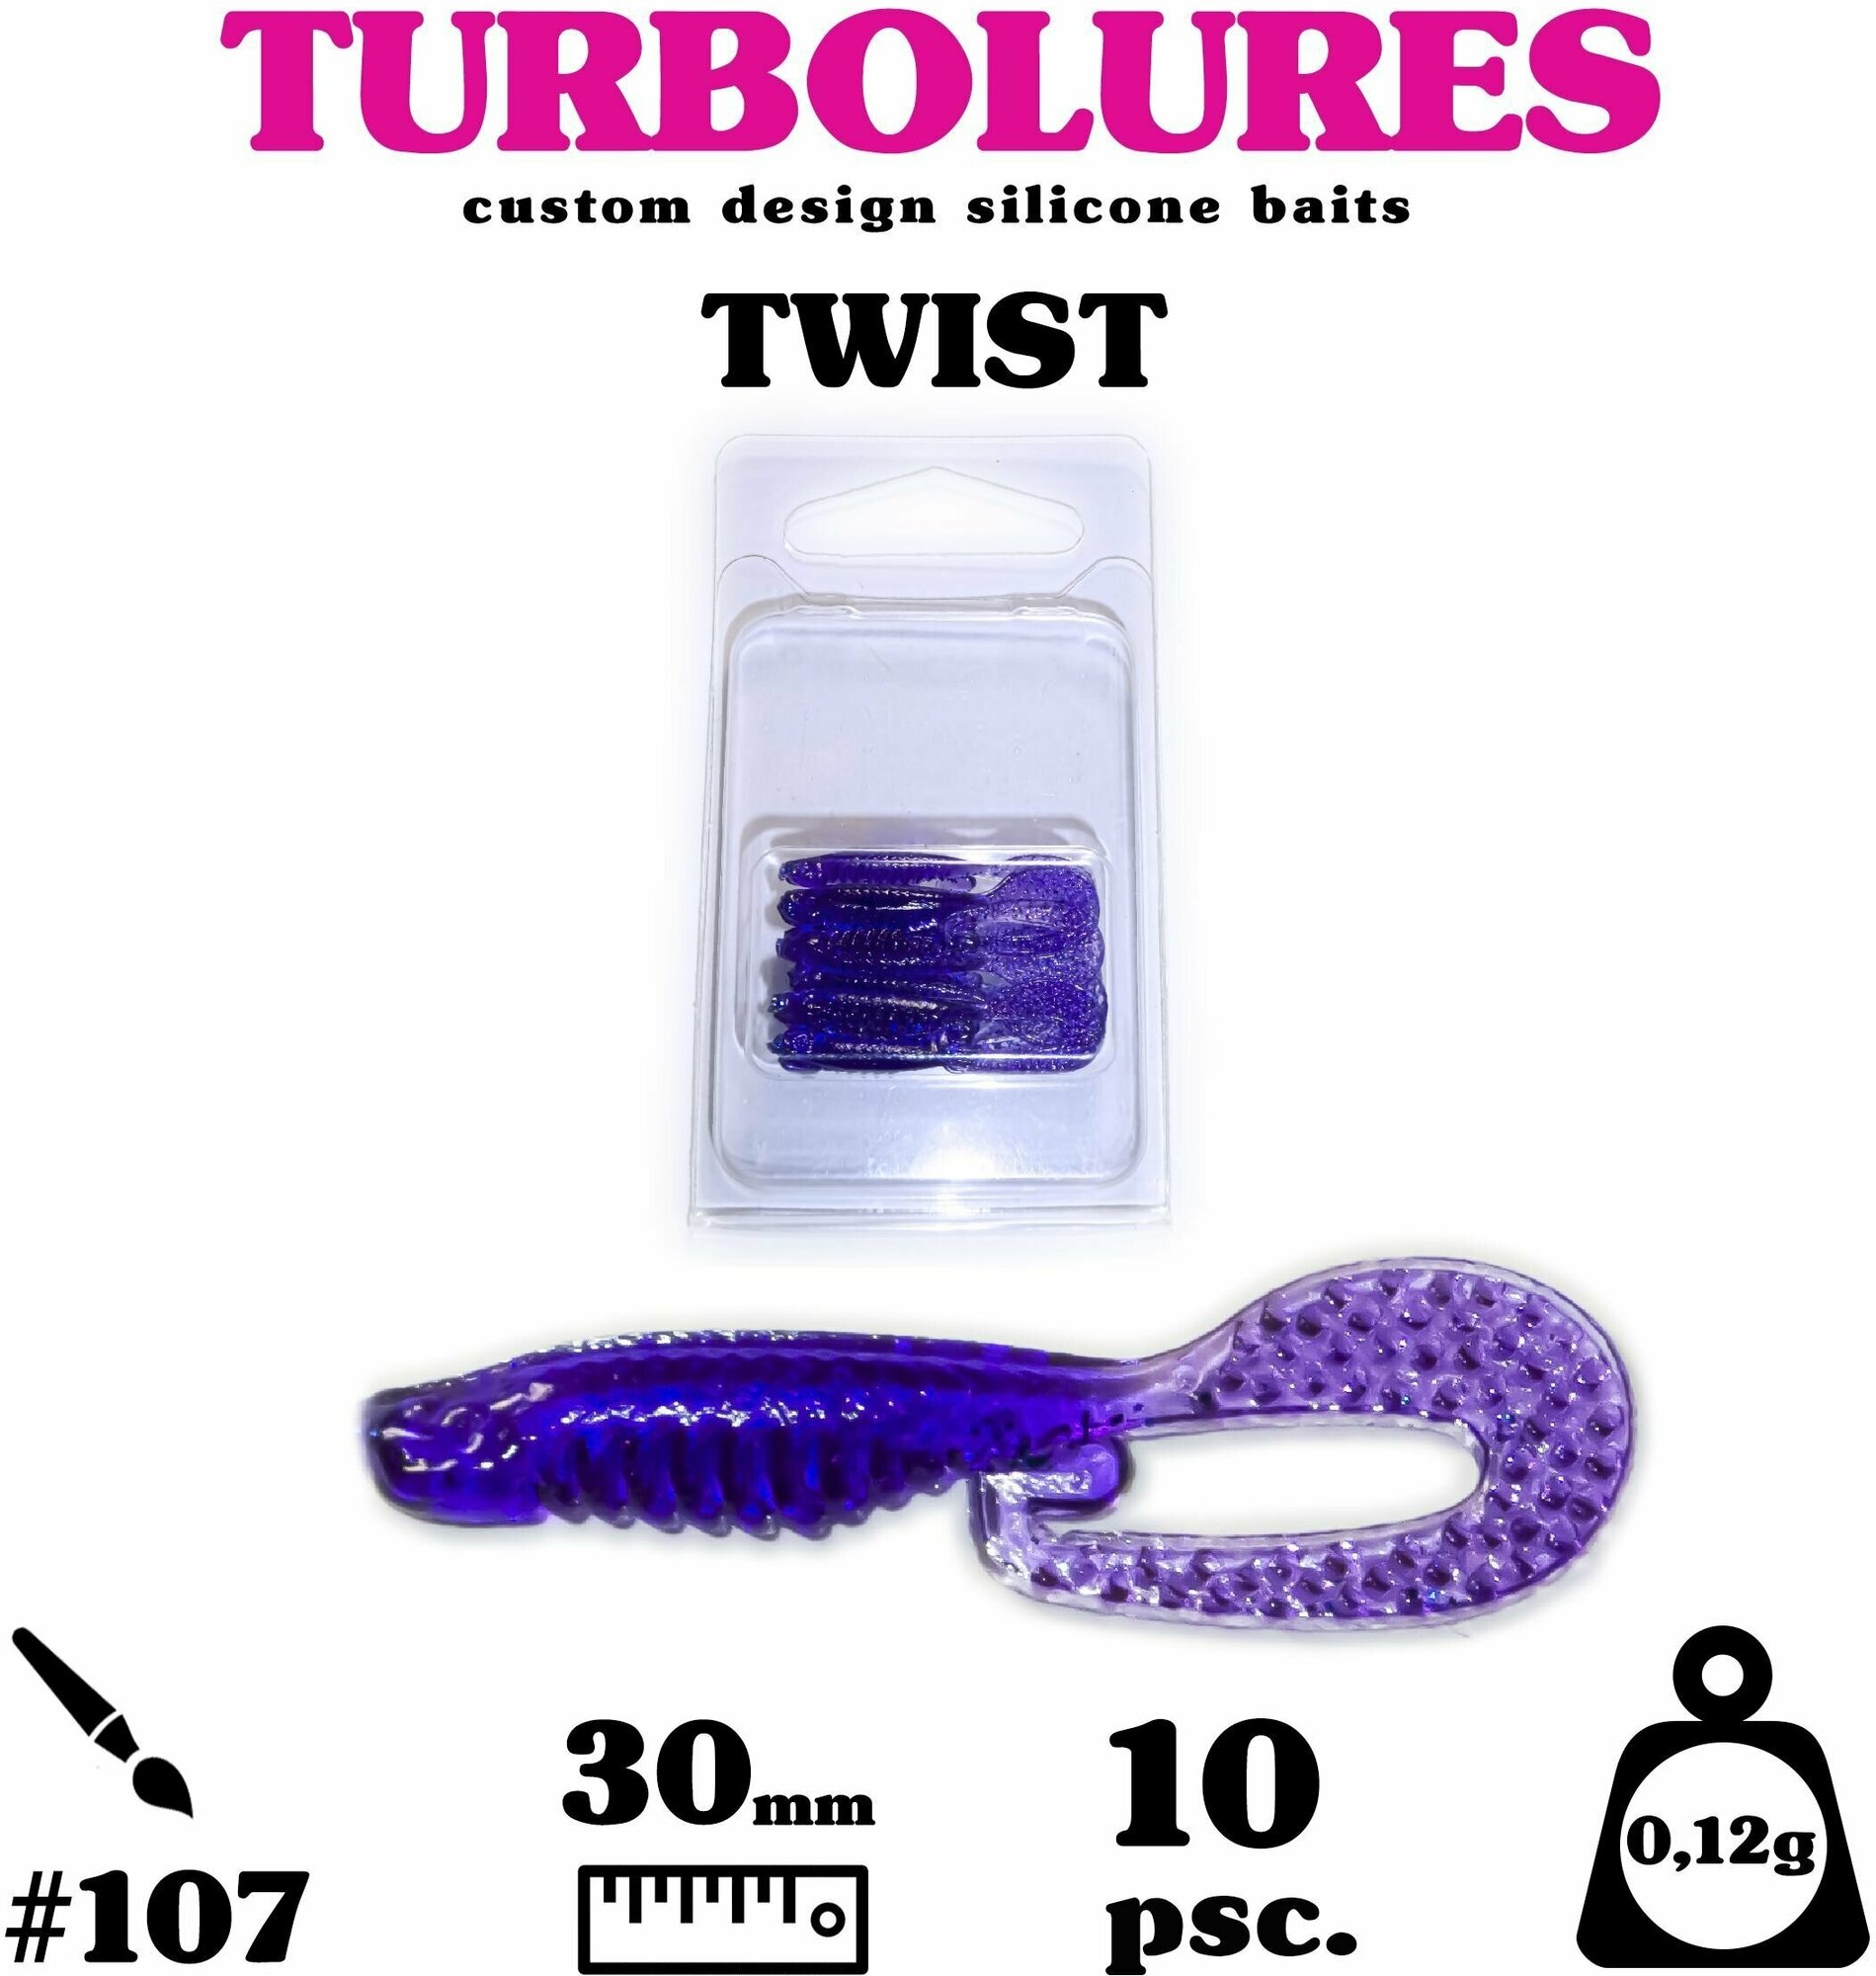 Мягкая приманка / силиконовая приманка / рыболовный набор / Turbolures Турболюрес / ТWISТ #107 30 мм 012 гр твистер 10 шт.